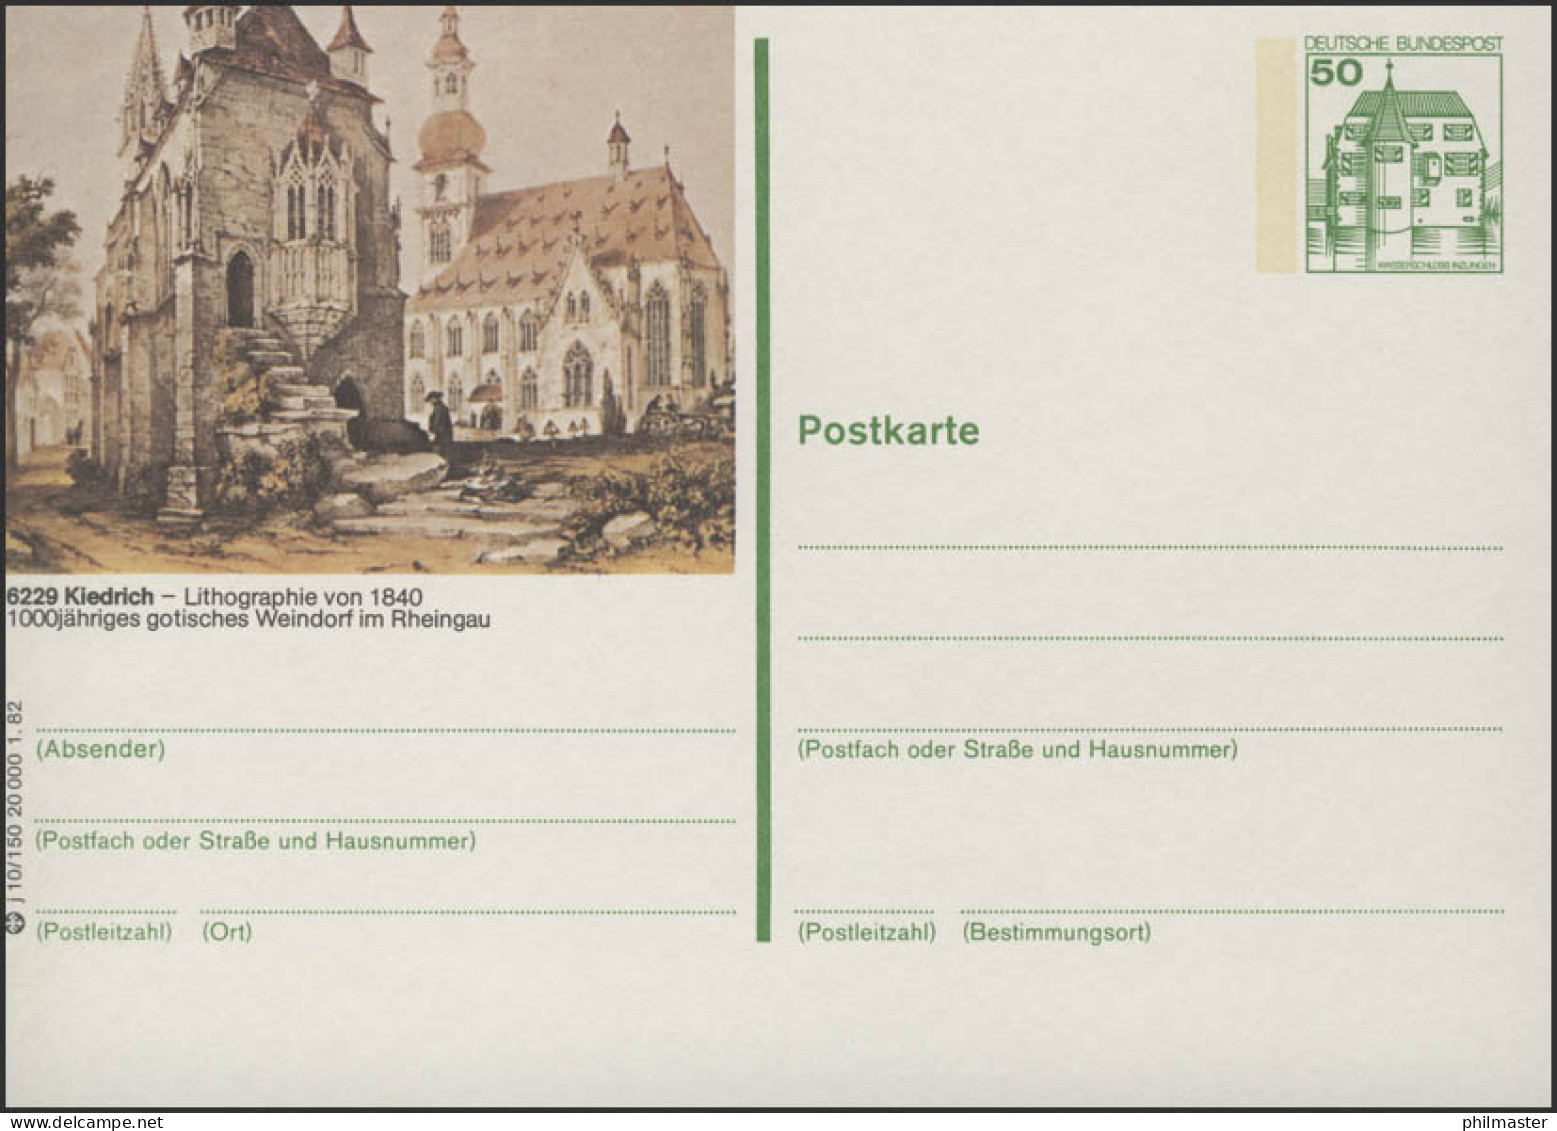 P134-j10/150 6229 Kiedrich - Martinskapelle Und Kirche ** - Bildpostkarten - Ungebraucht